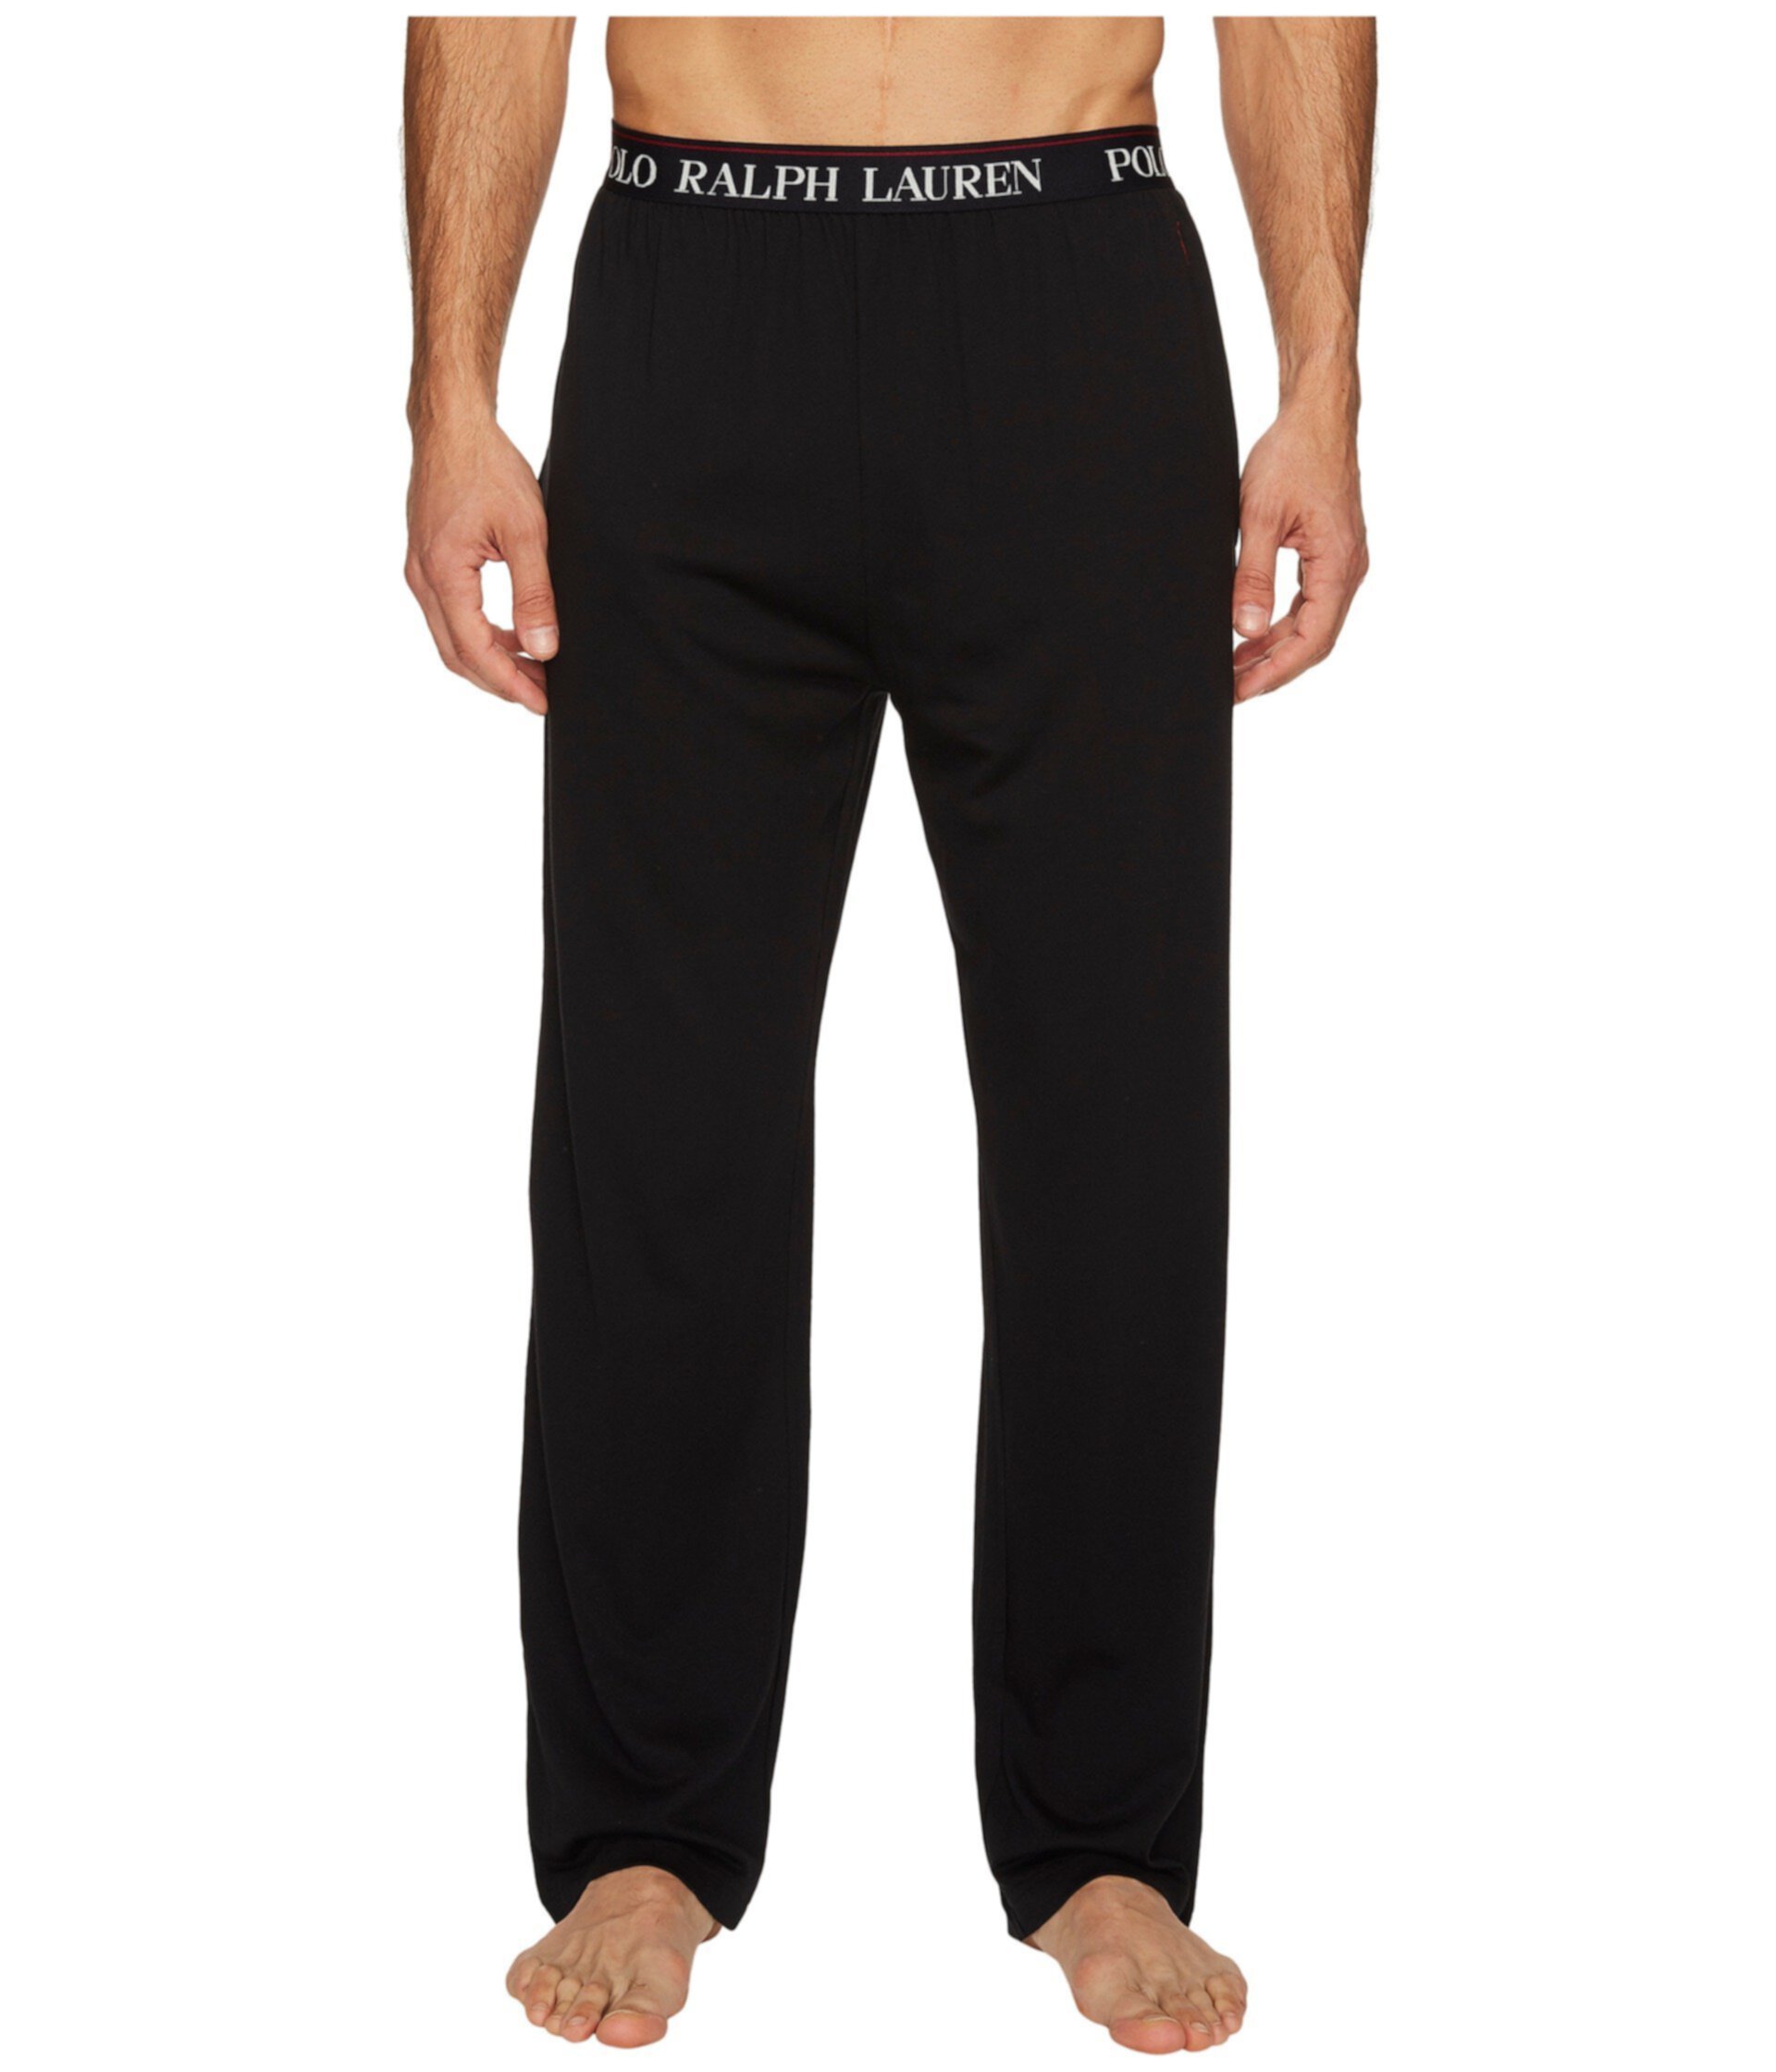 Трикотажные пижамные брюки Supreme Comfort Ralph Lauren